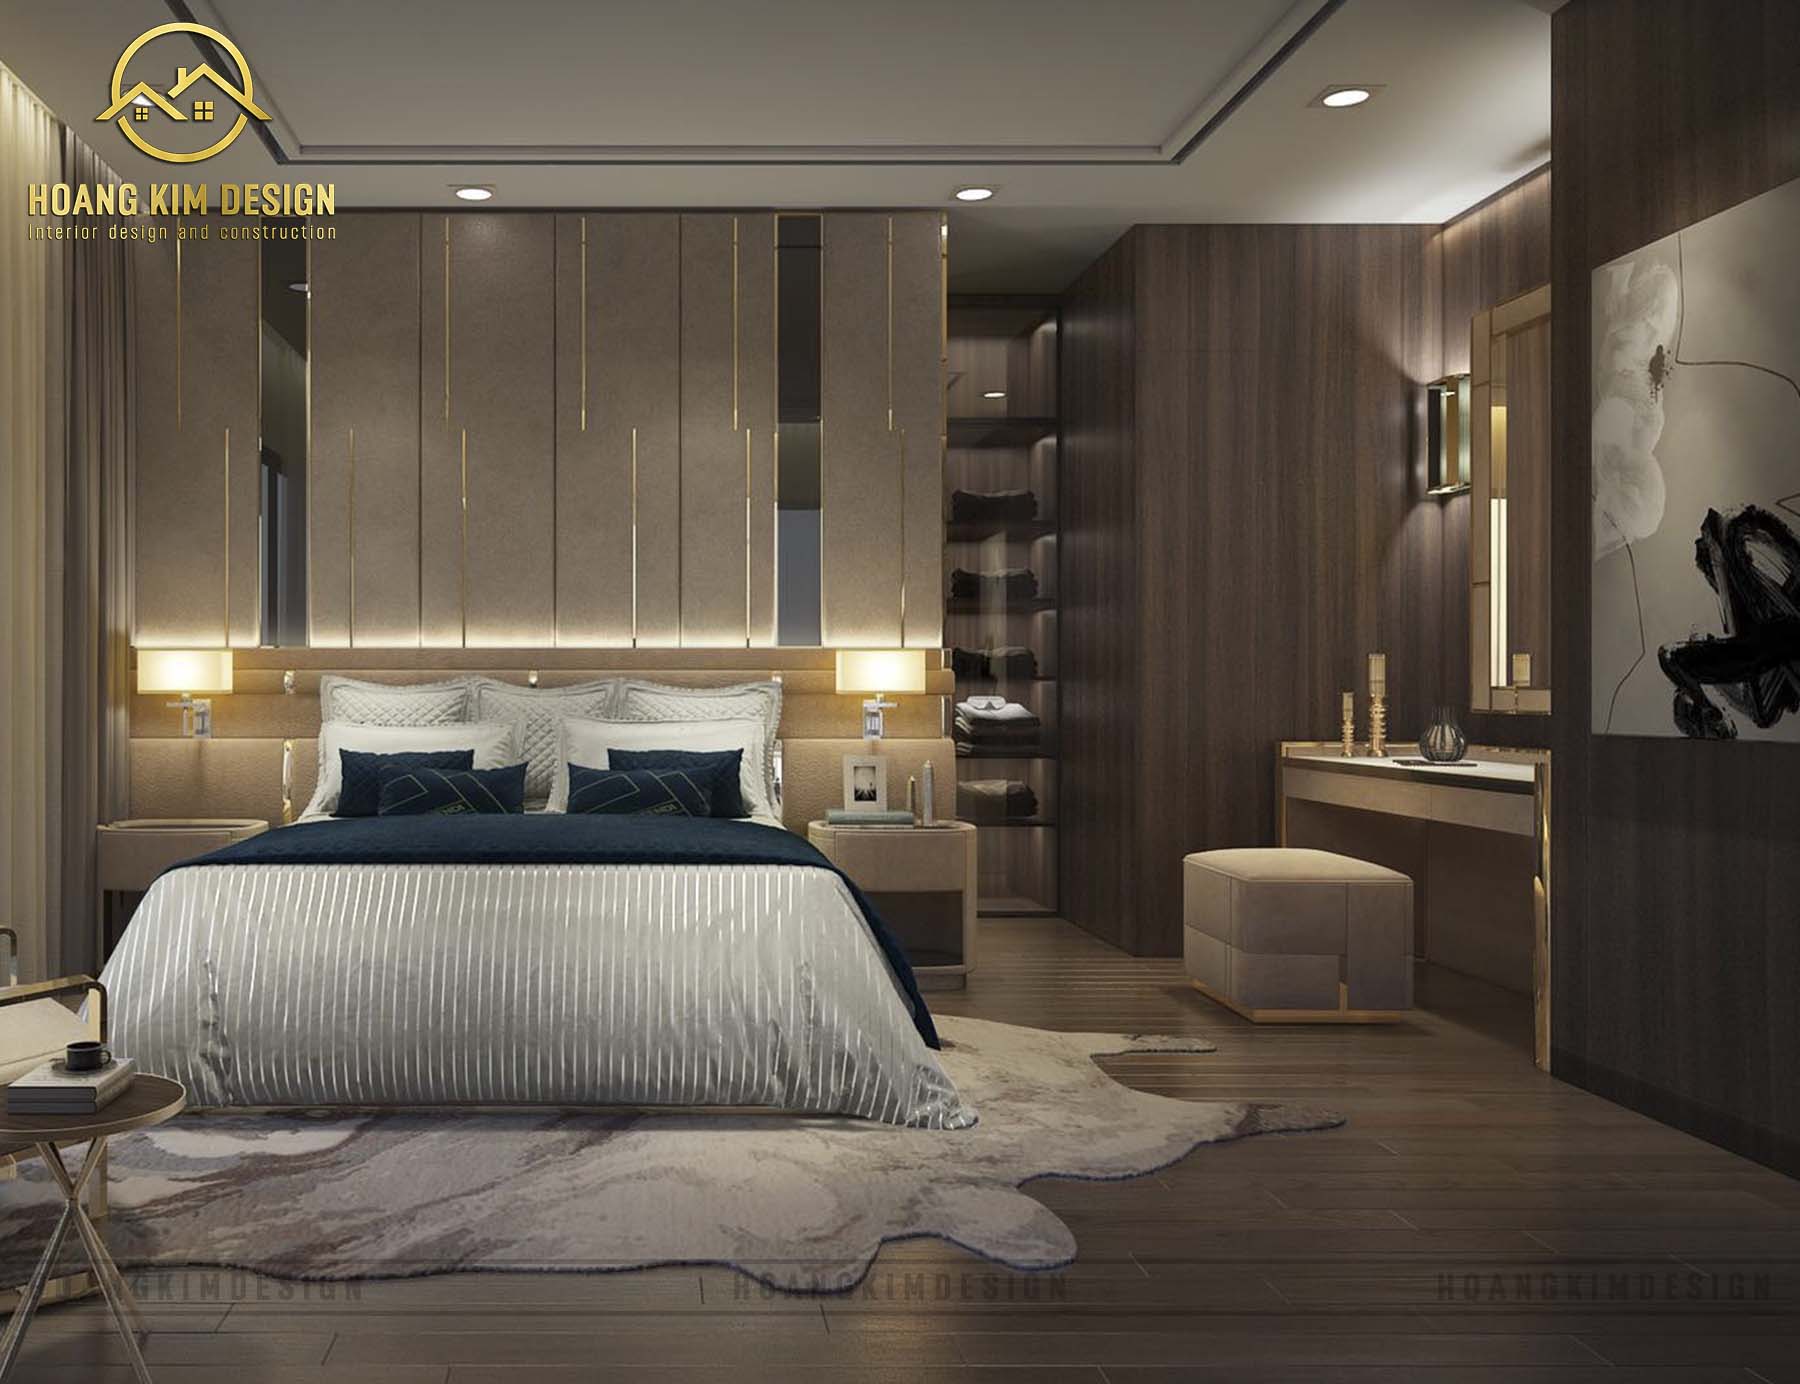 Sàn phòng ngủ được trang trí gỗ tự nhiên tạo cảm giác ấm úng